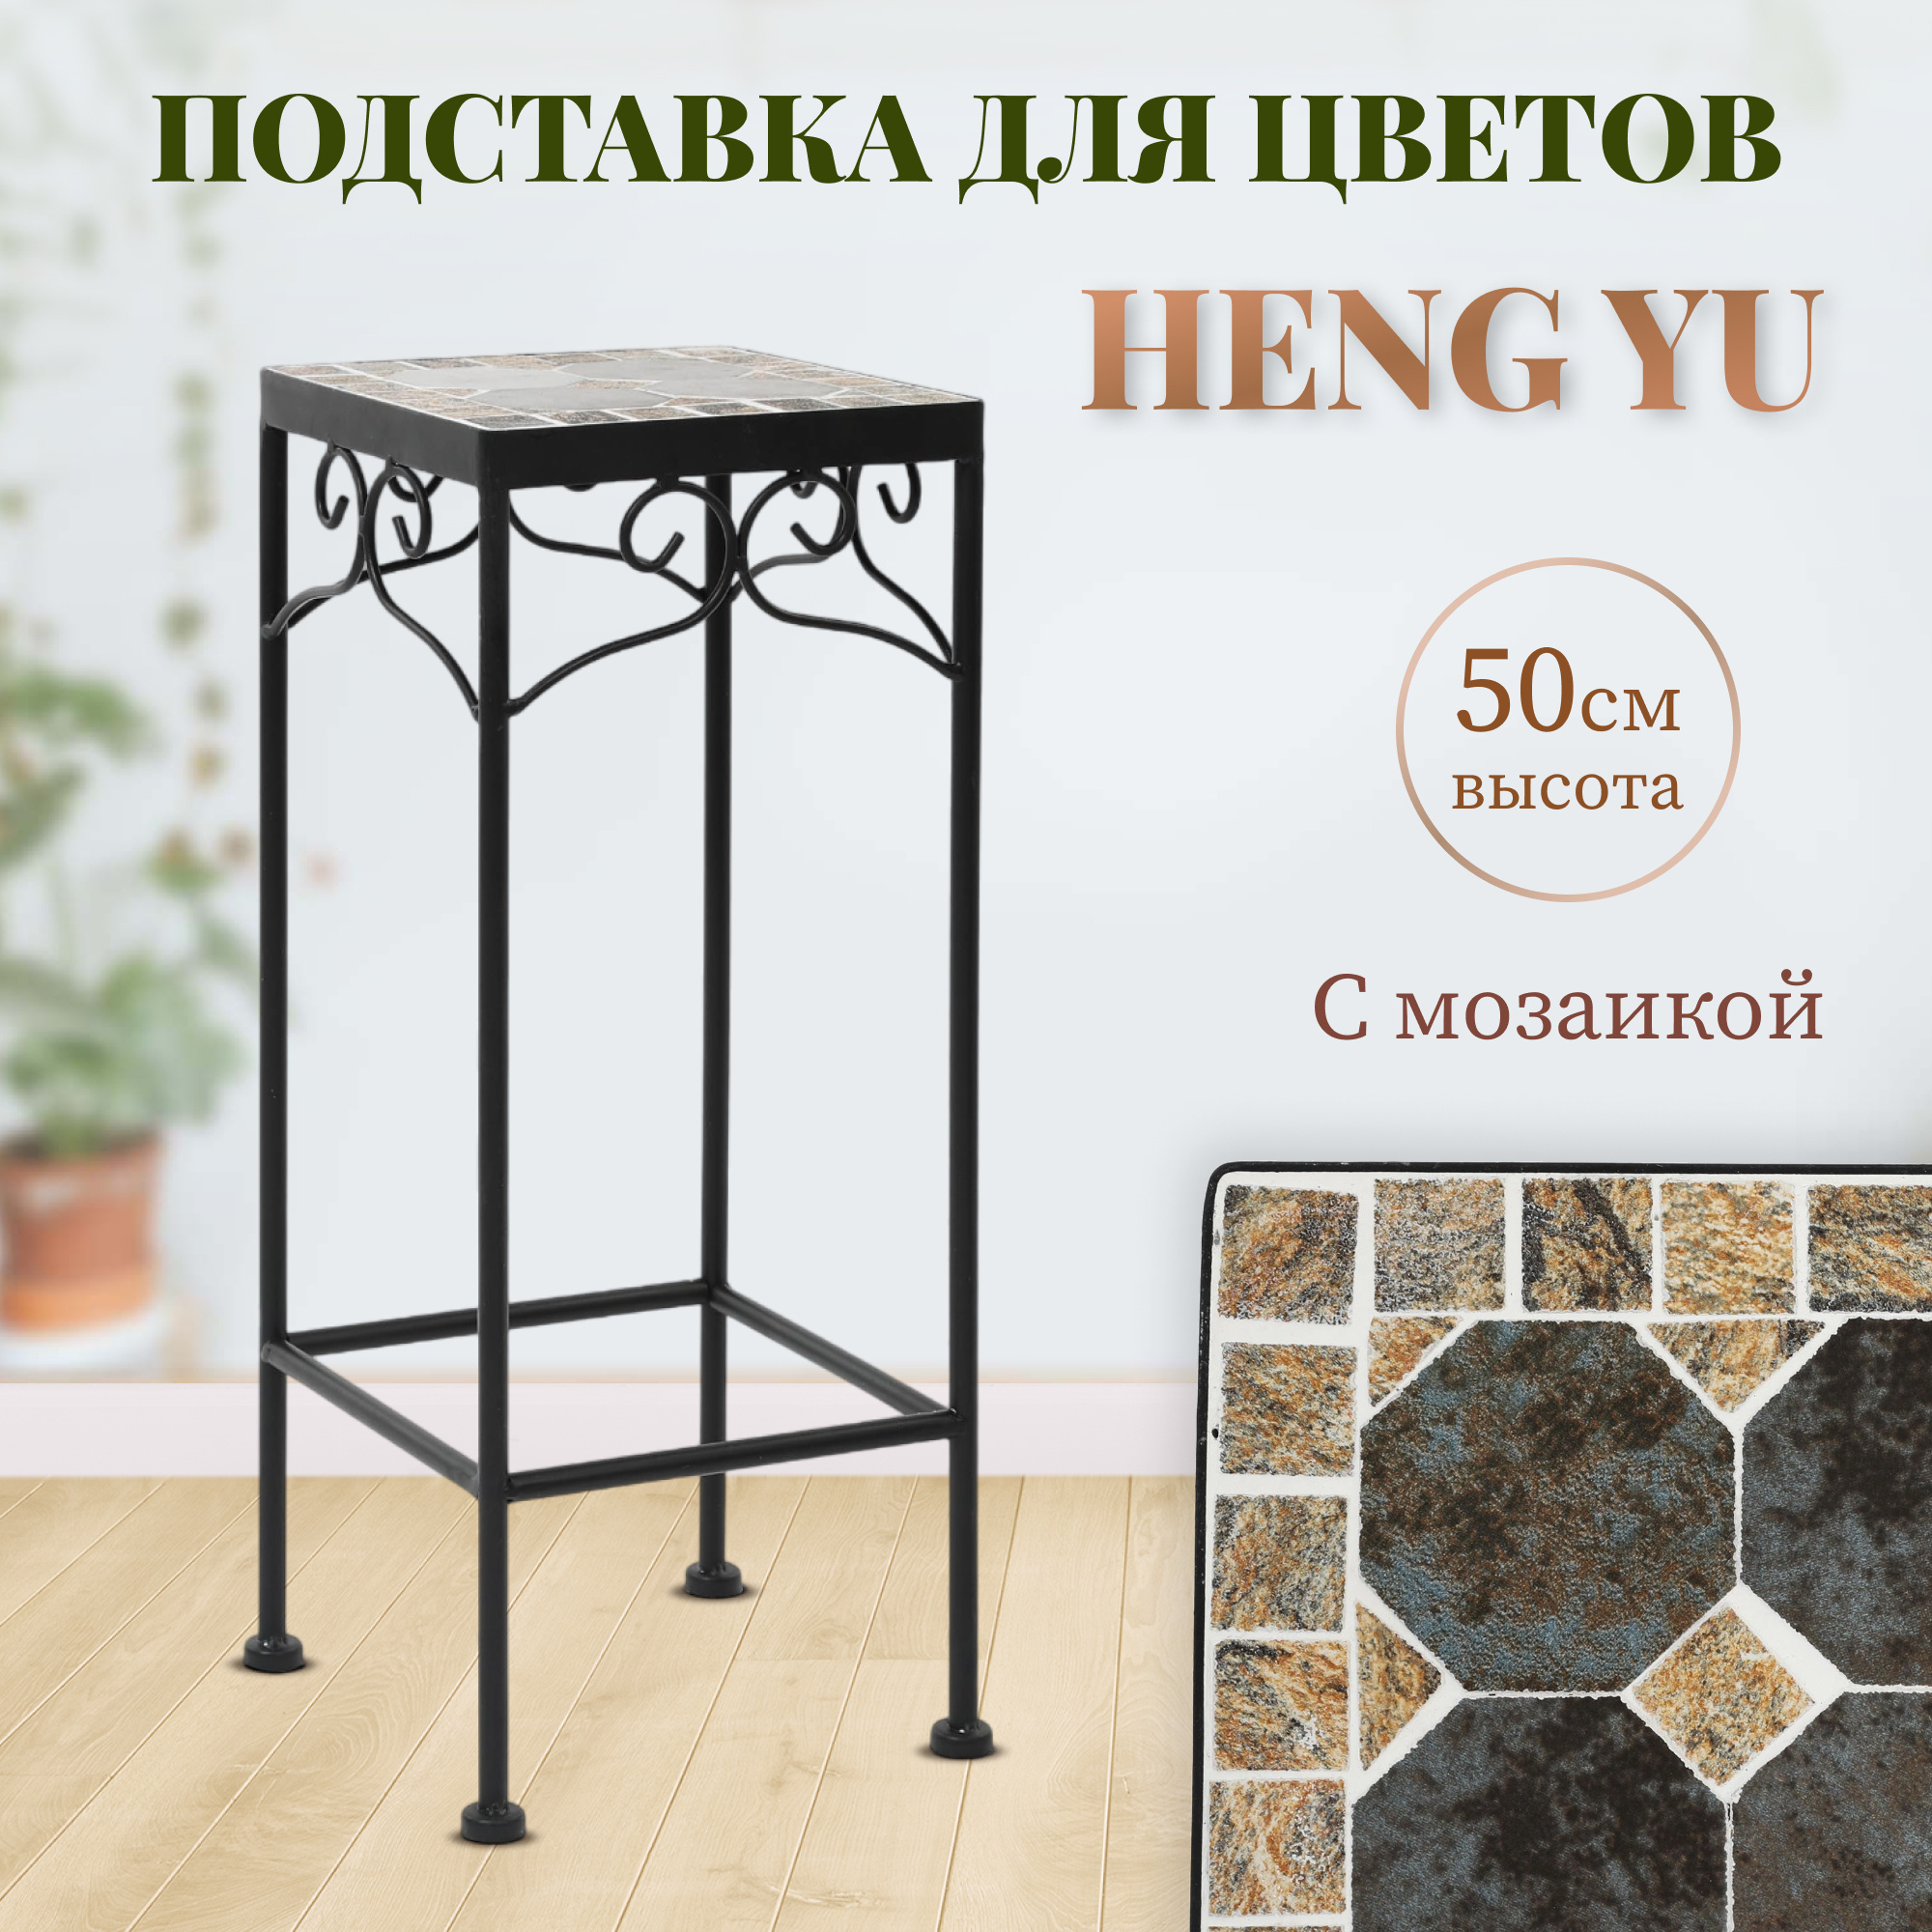 фото Подставка для цветов с мозаикой heng yu серая 20х20х50 см